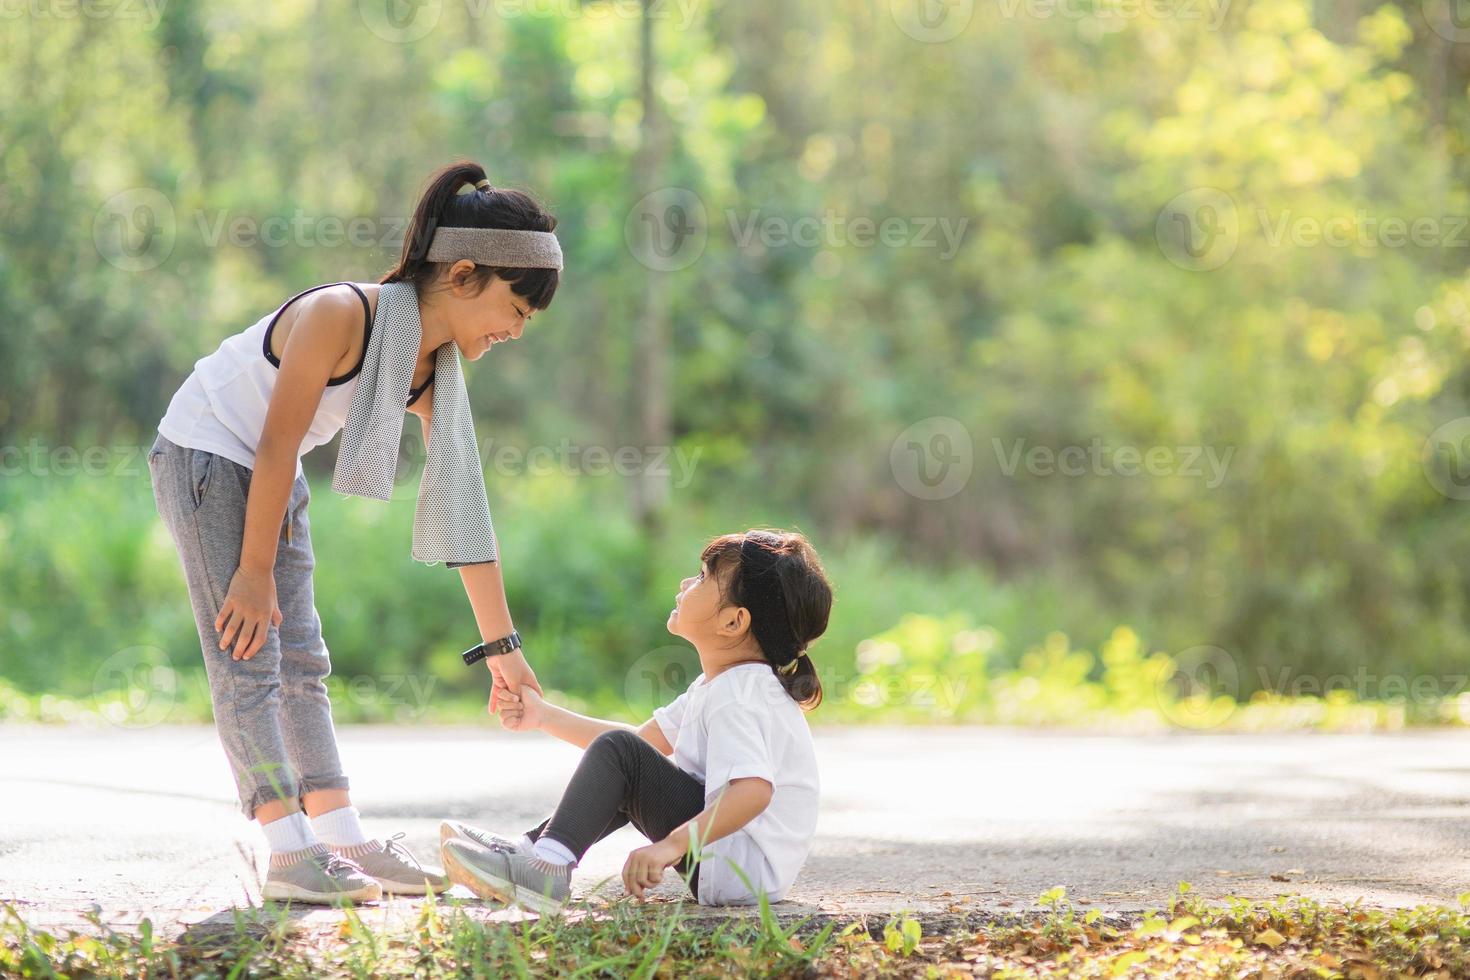 linda chica asiática da la mano para ayudar a su hermana a sufrir un accidente durante la carrera foto